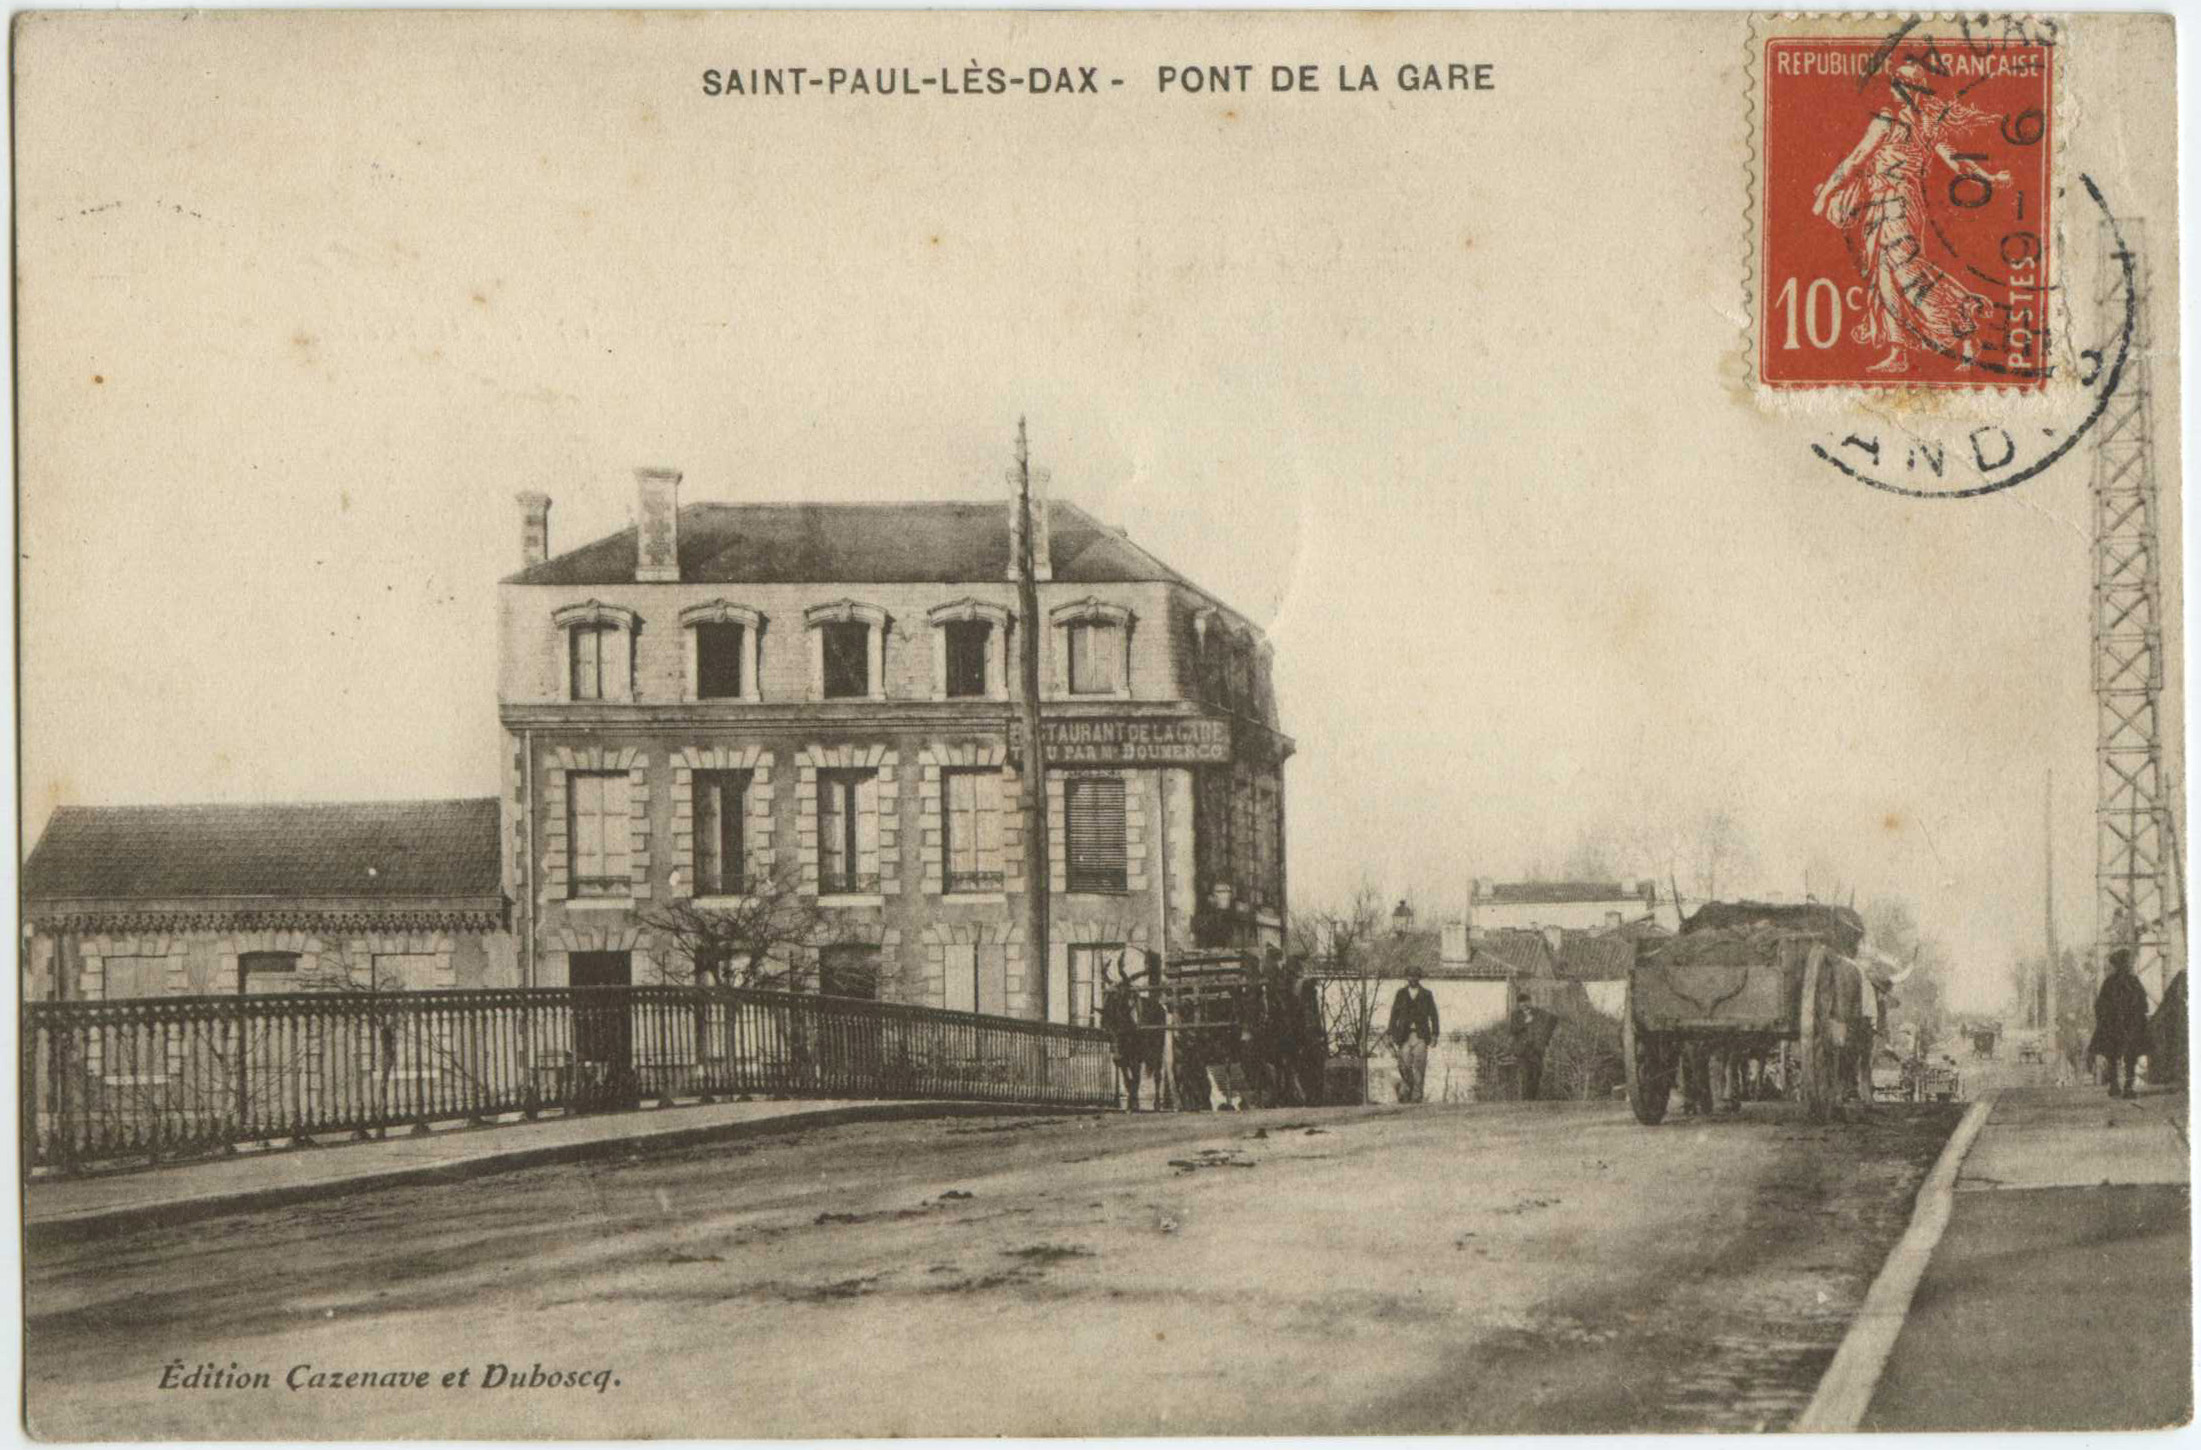 Saint-Paul-lès-Dax - PONT DE LA GARE